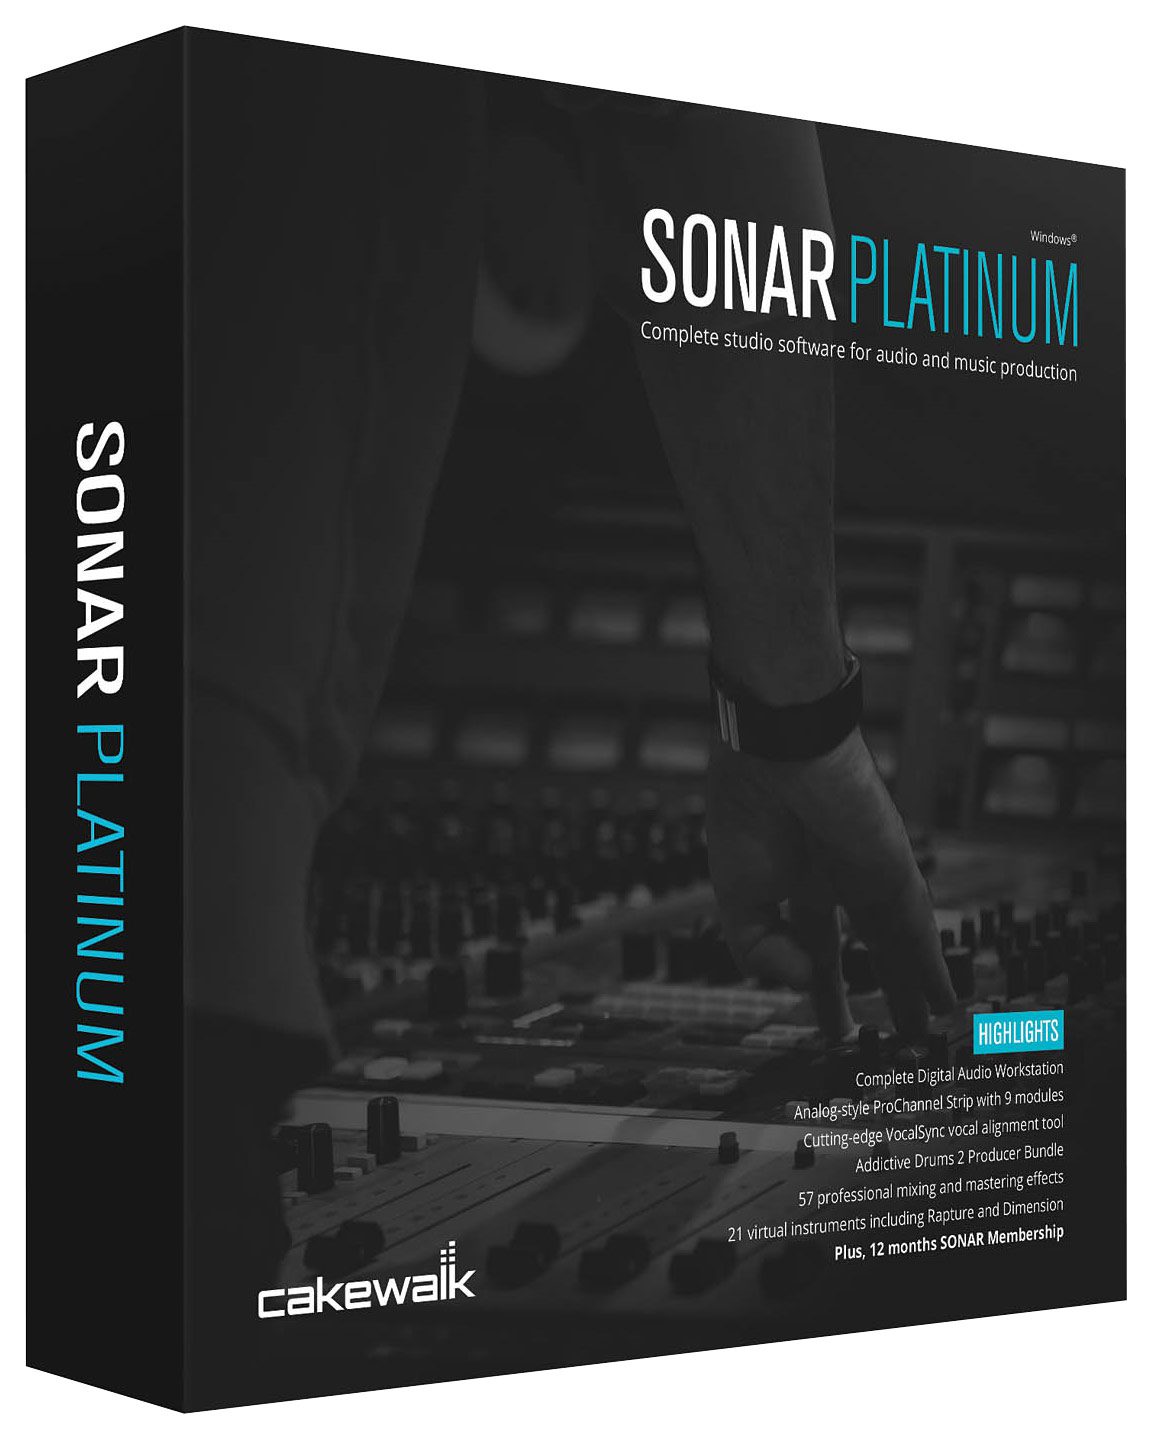 Cakewalk SONAR Platinum Full Version Free Download